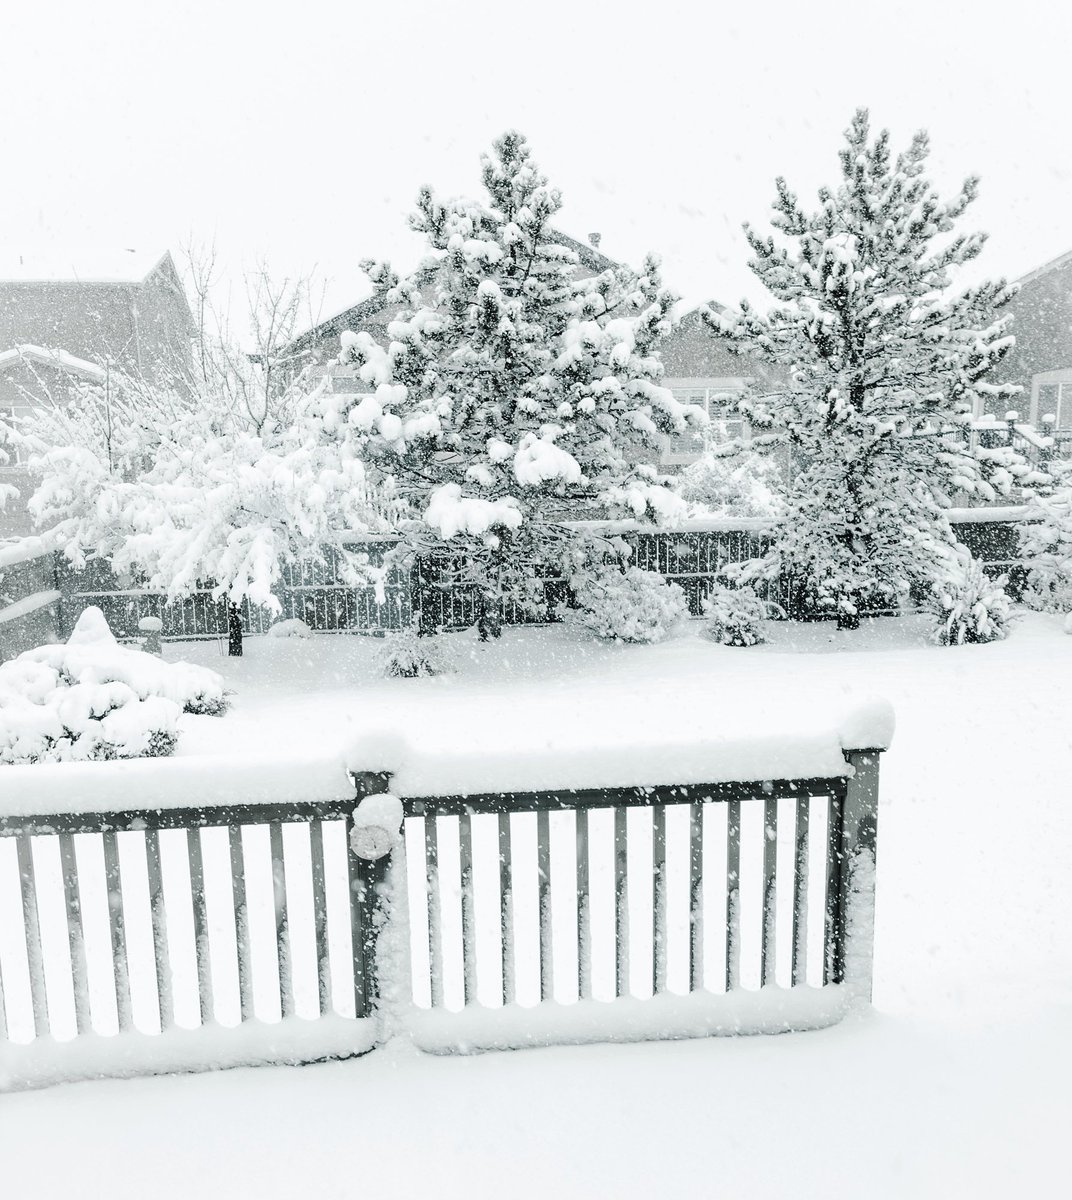 Snowstorm in #Colorado ☃️ @SnowHour @StormHour #cowx